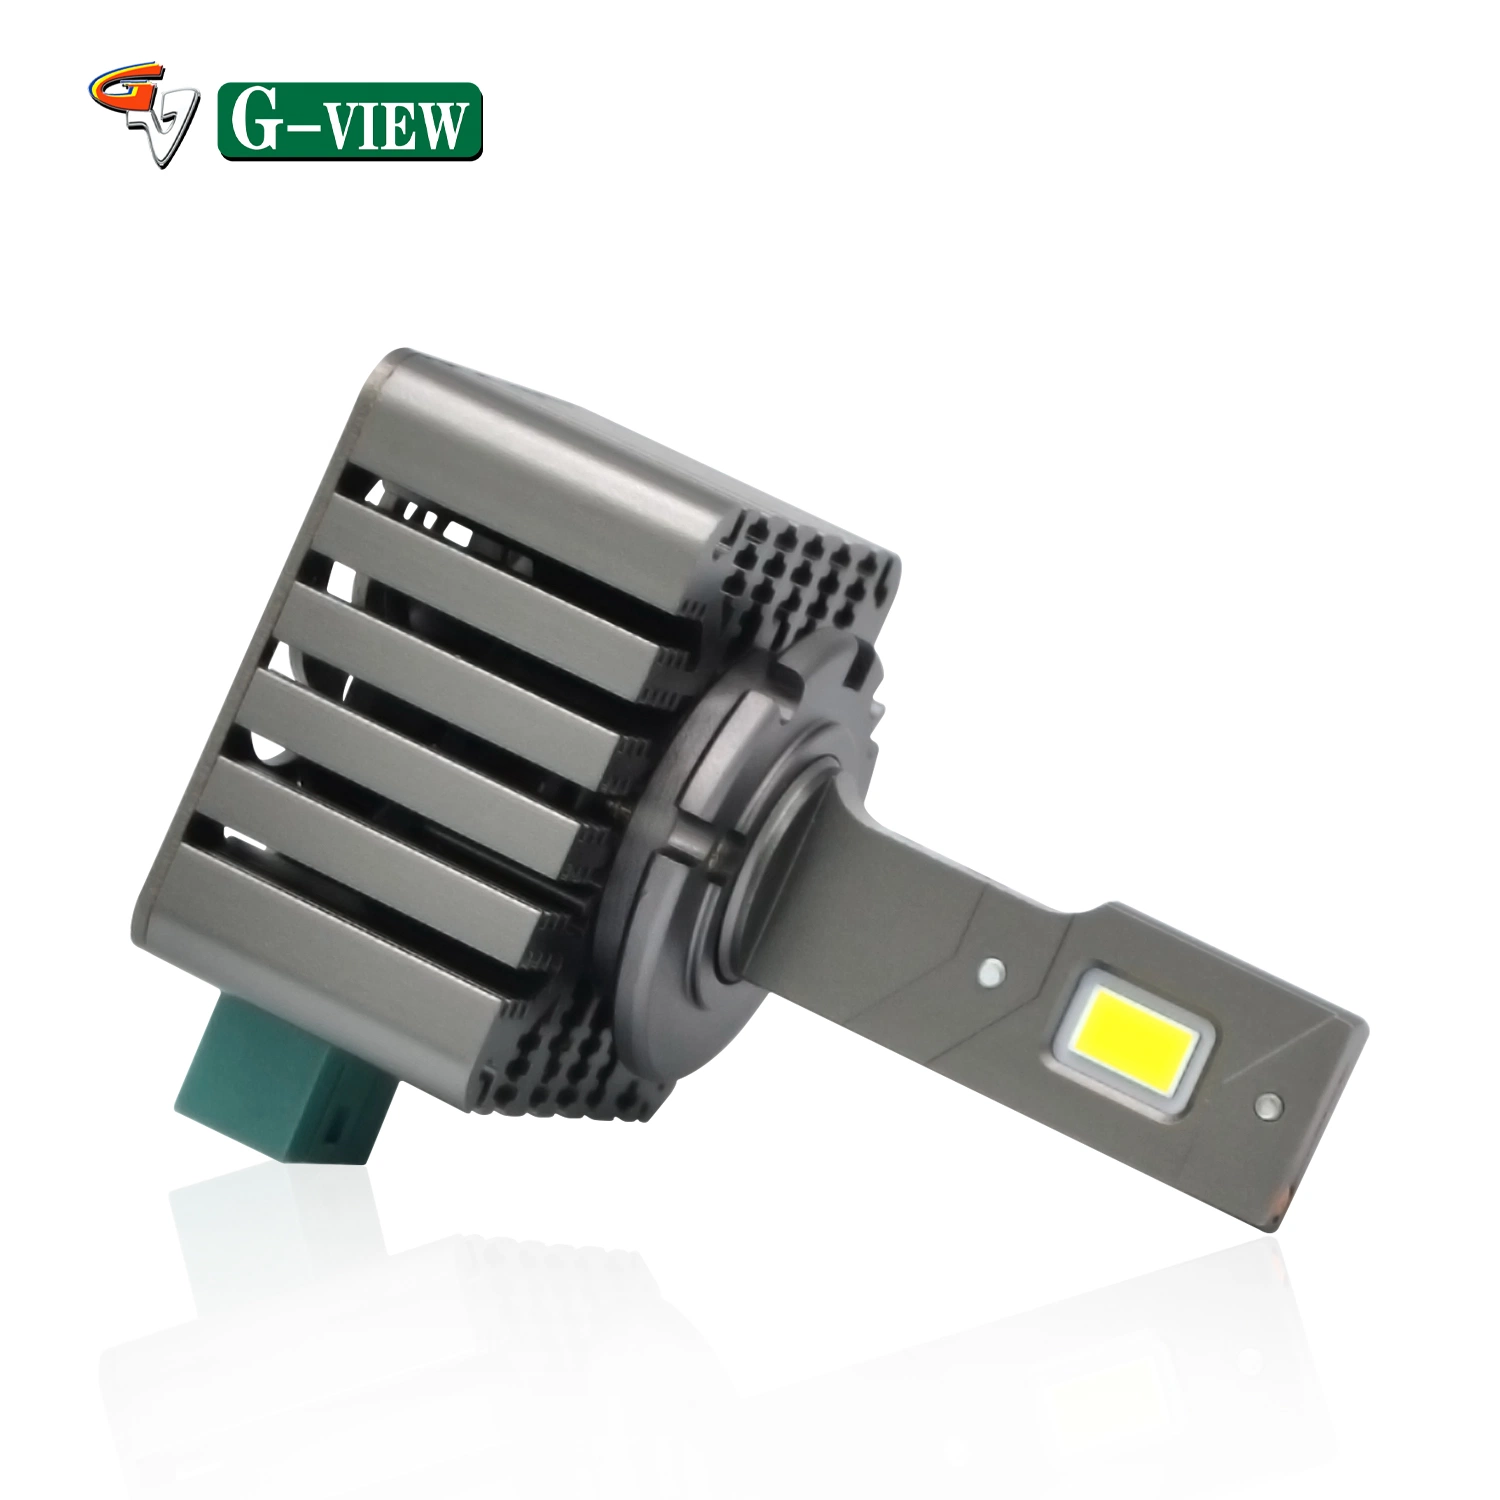 G-View G15D 70W 10000lm preço barato com desconto alta potência Auto Car Accessories lâmpadas LED super brilhantes para faróis venda a quente 360 Farol LED para automóvel H4 claro